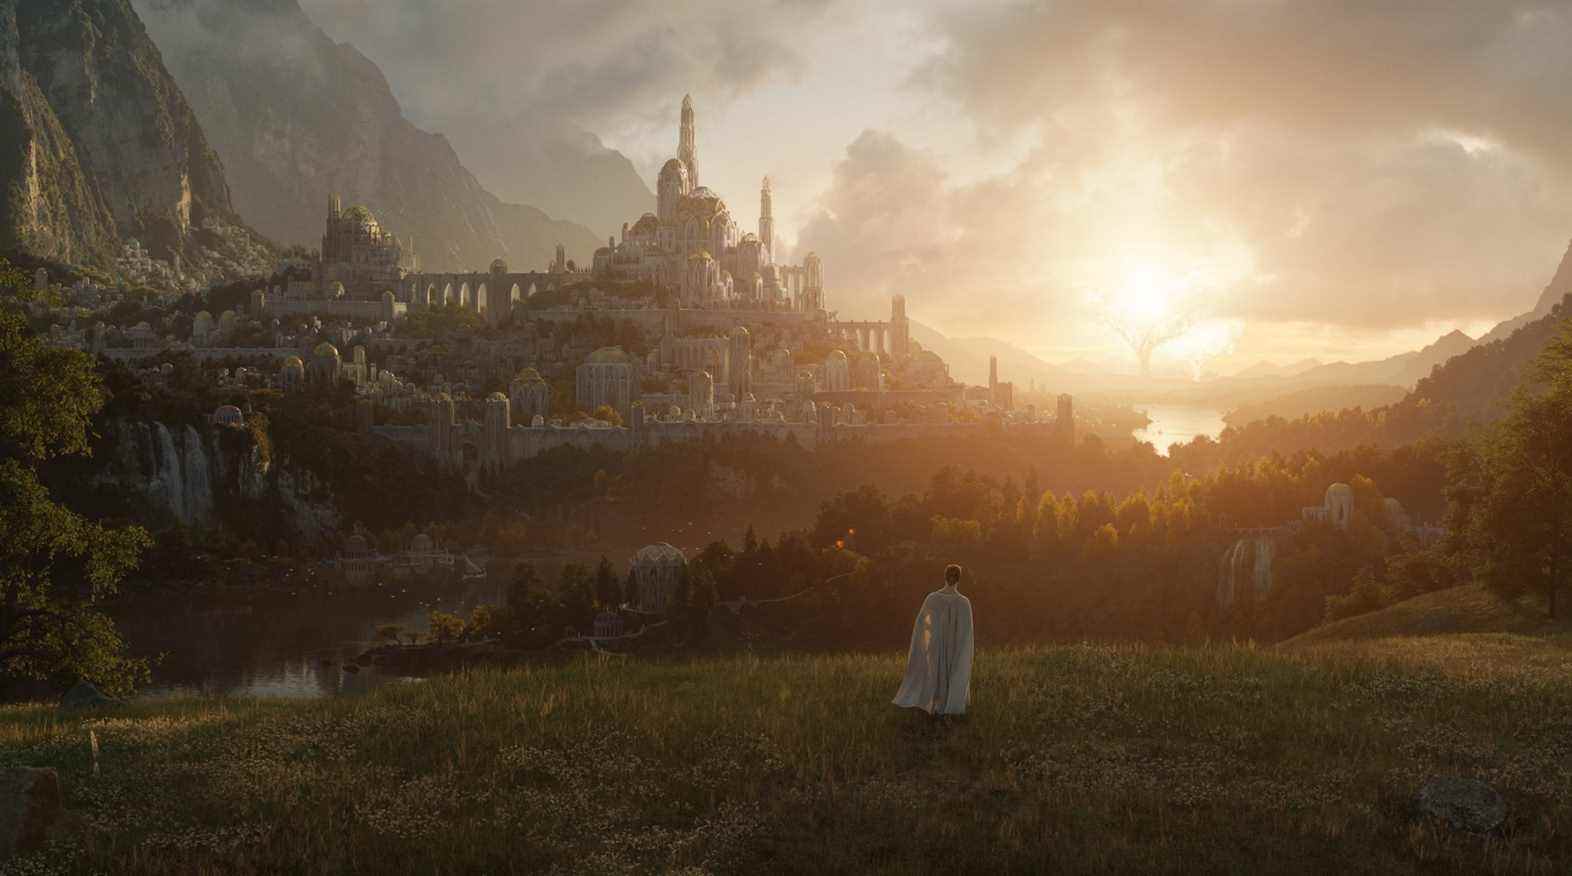 Une image promotionnelle pour la série télévisée Lord of the Rings d'Amazon Prime Video